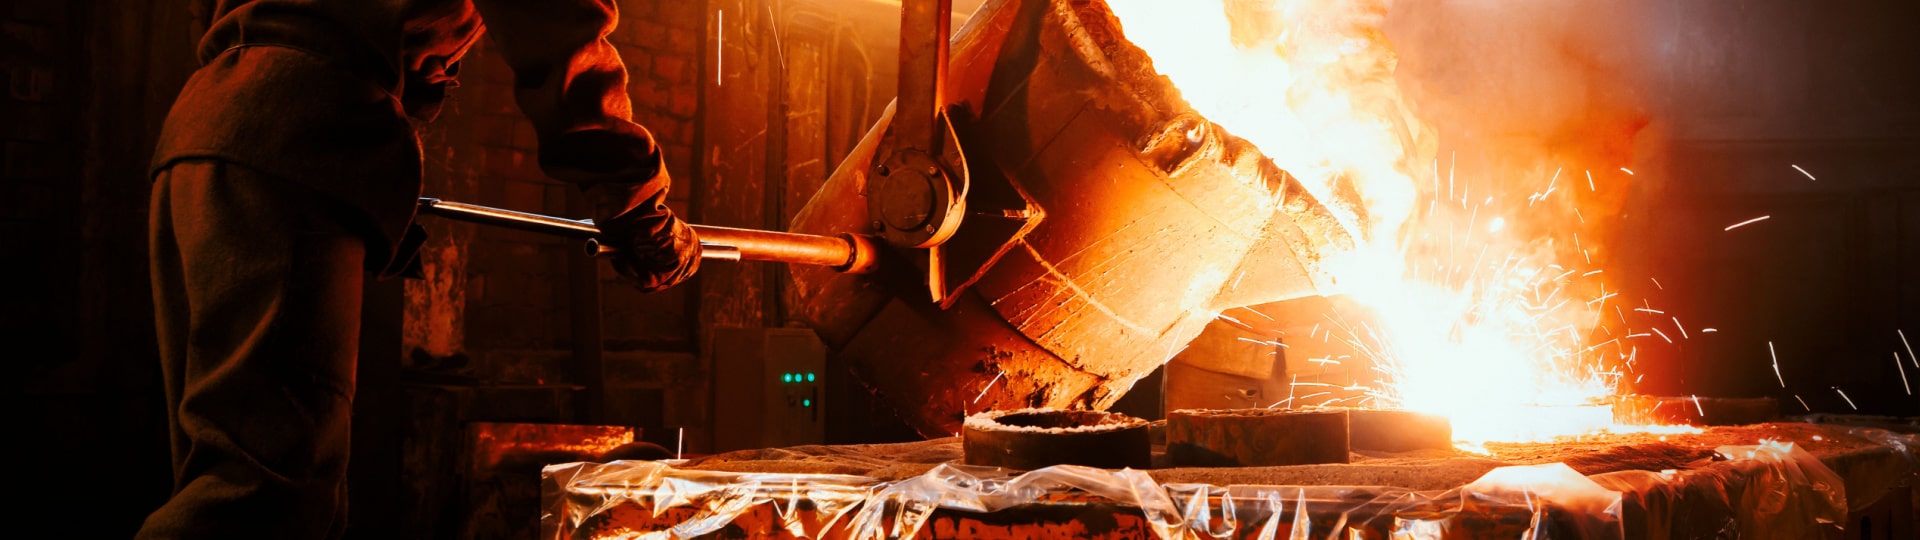 Ocelárna U.S. Steel odmítla nabídku na převzetí